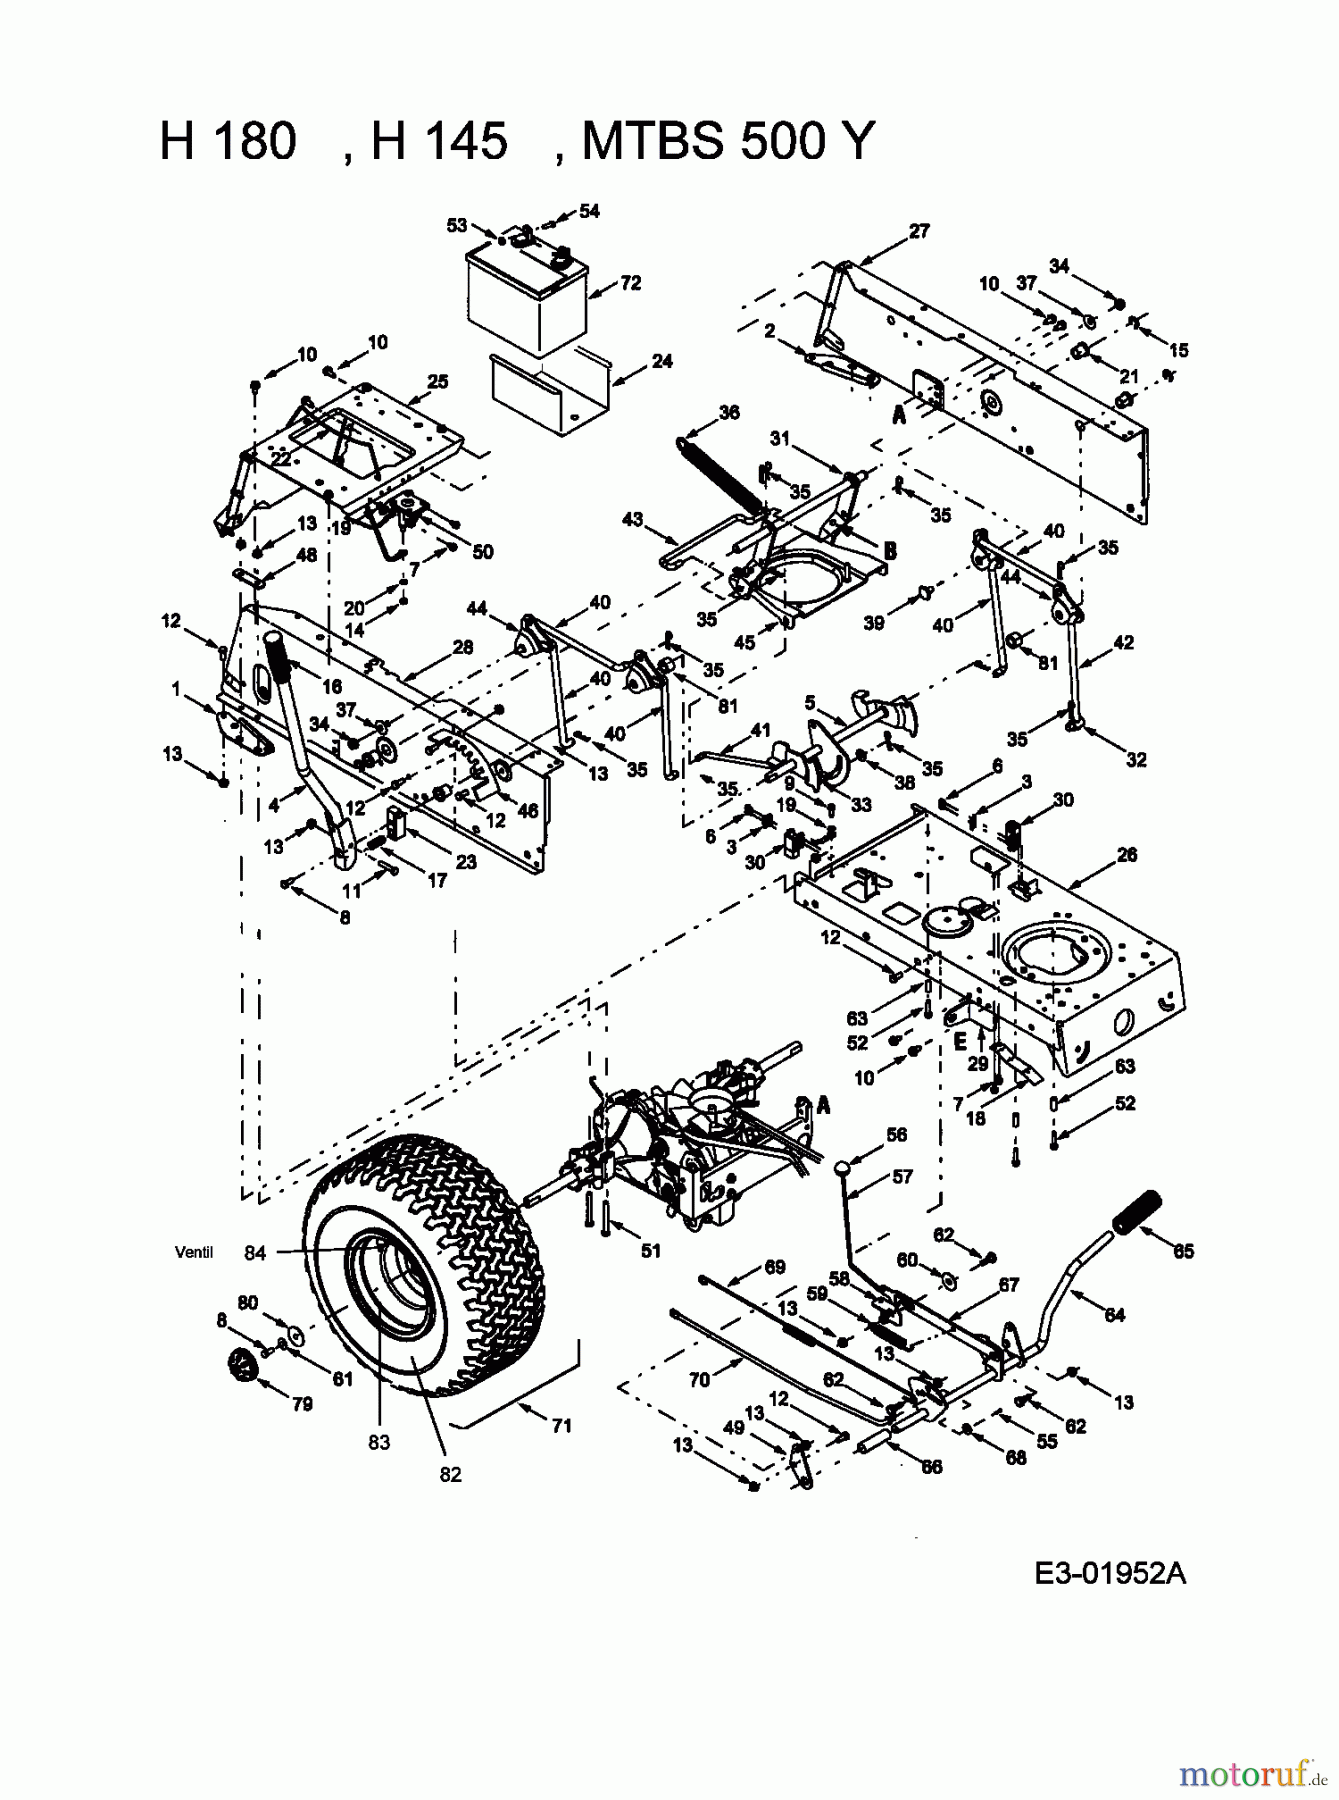  MTD Lawn tractors H/130 13AQ698G678  (2004) Drive system, Pedals, Rear wheels